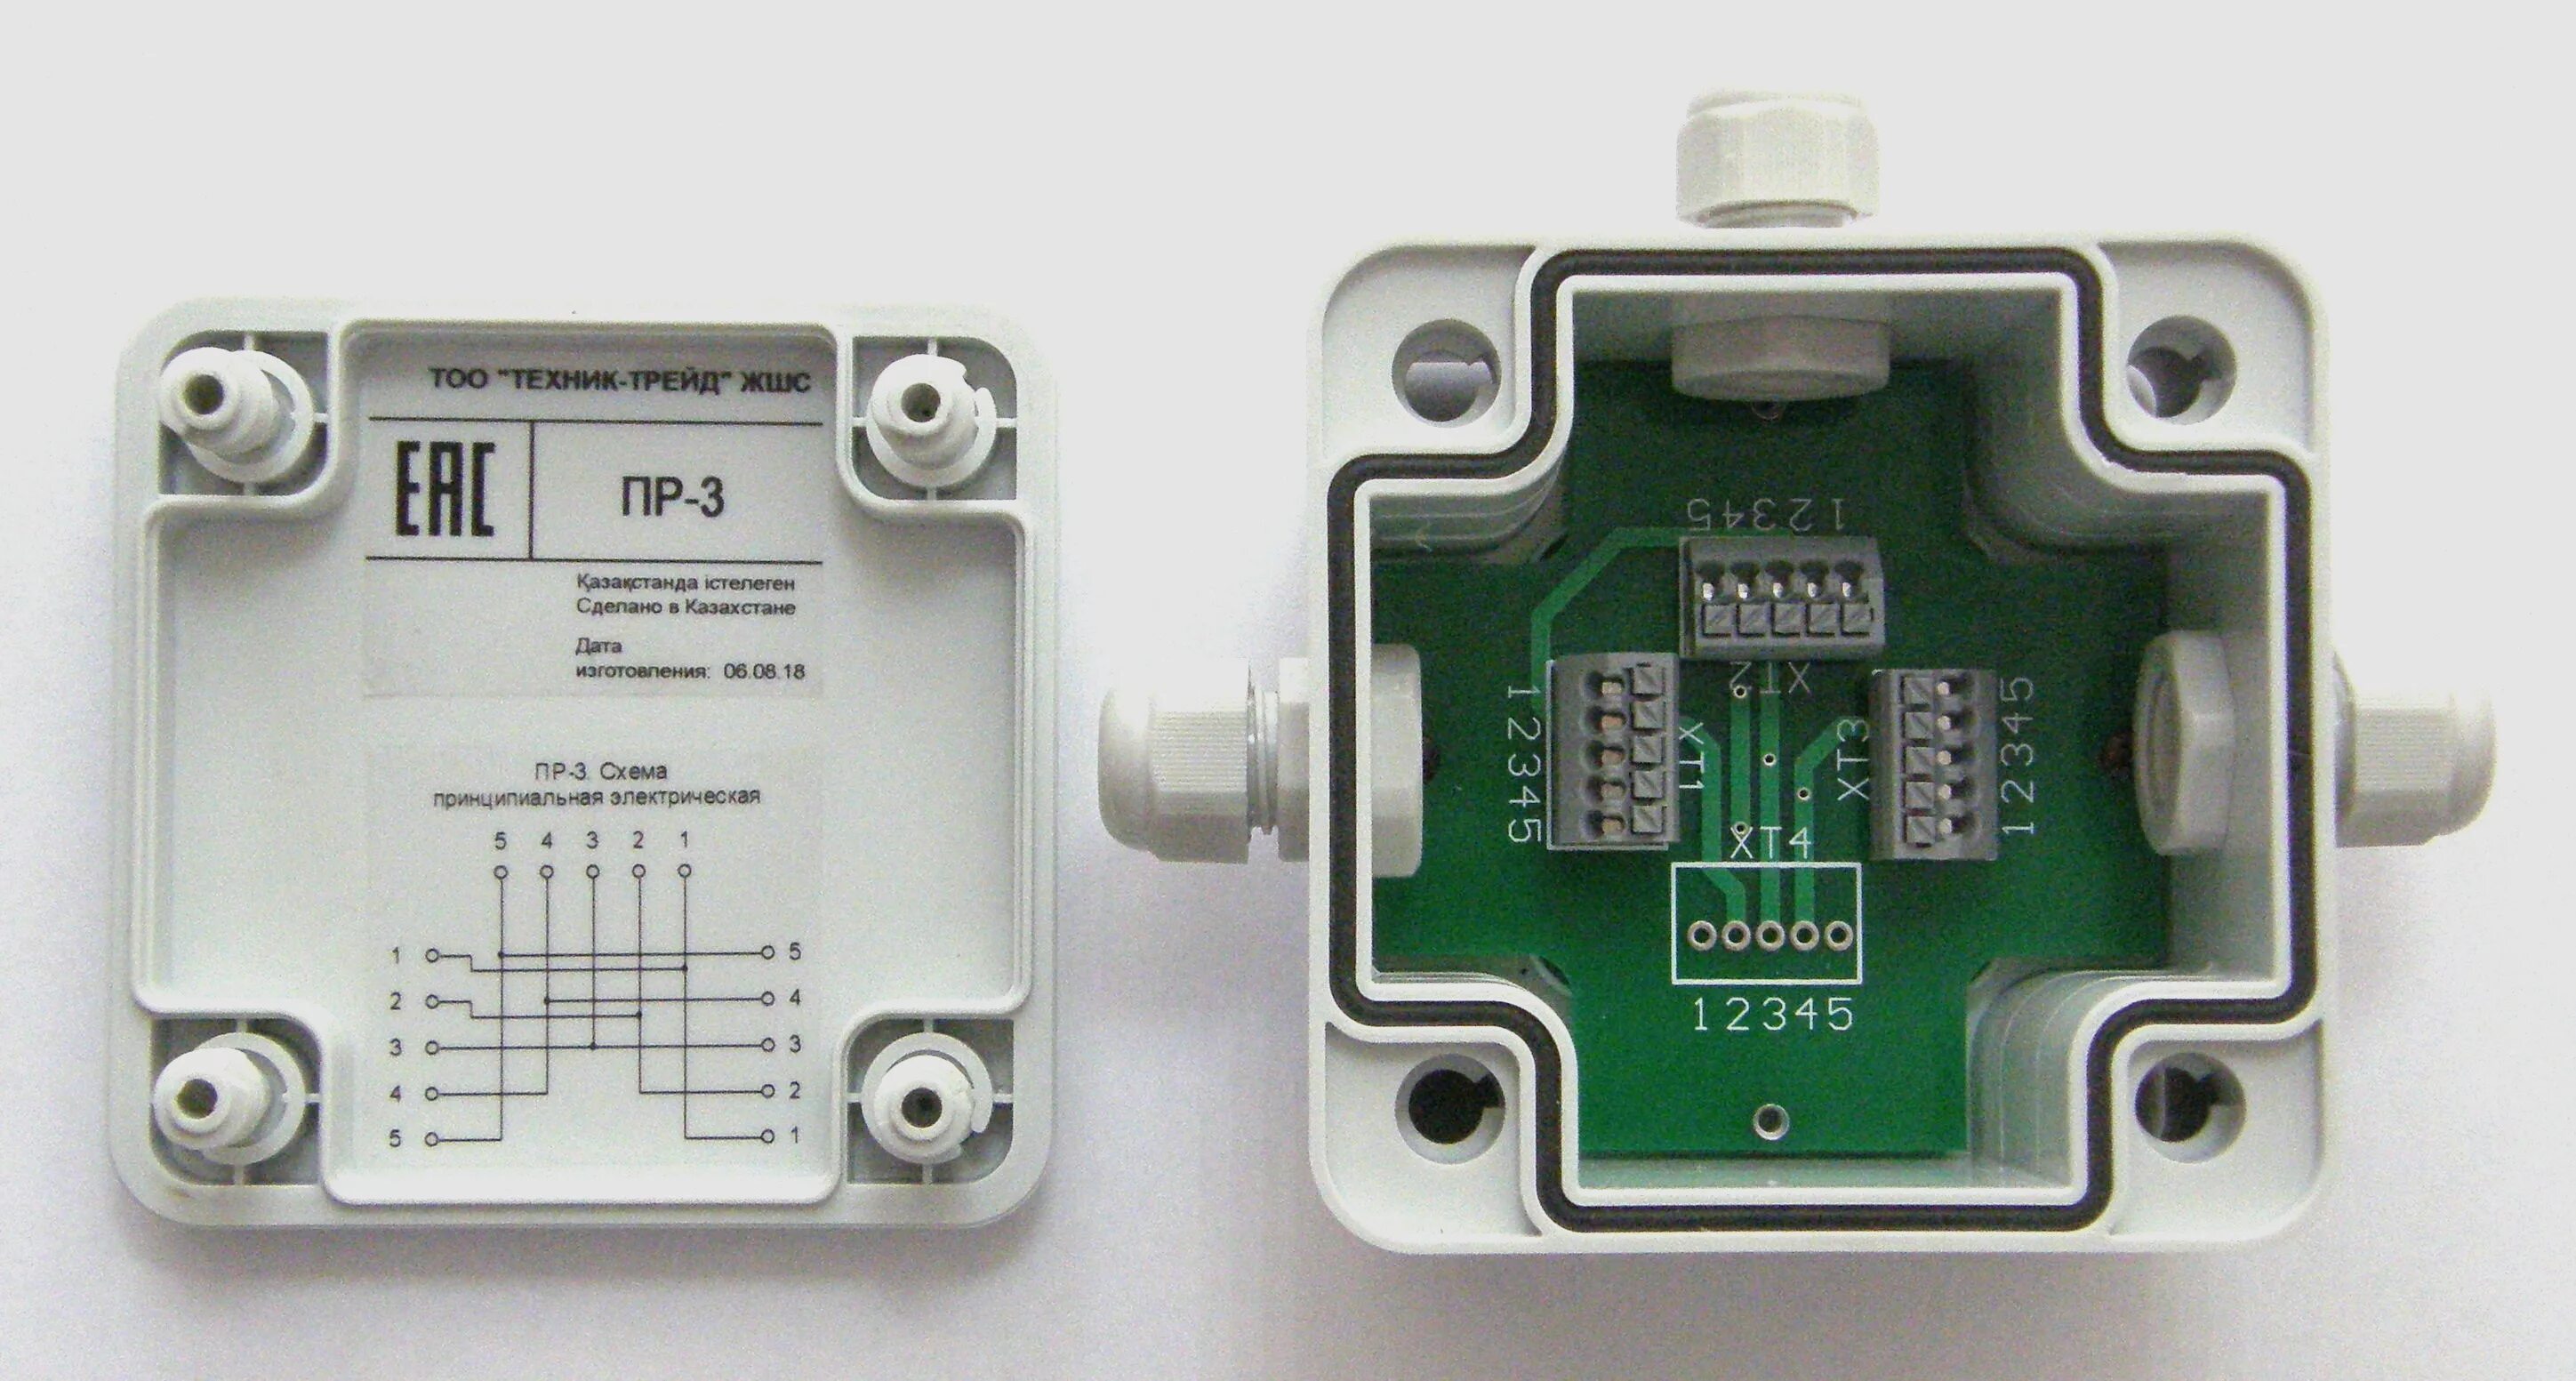 Пр 6 одолели. Разветвитель интерфейса пр-4 RS-422/485. Разветвитель интерфейса RS-422/485 пр-3. Разветвитель интерфейса RS-485 КРП-3. Разветвитель интерфейса RS-485 пр-4.